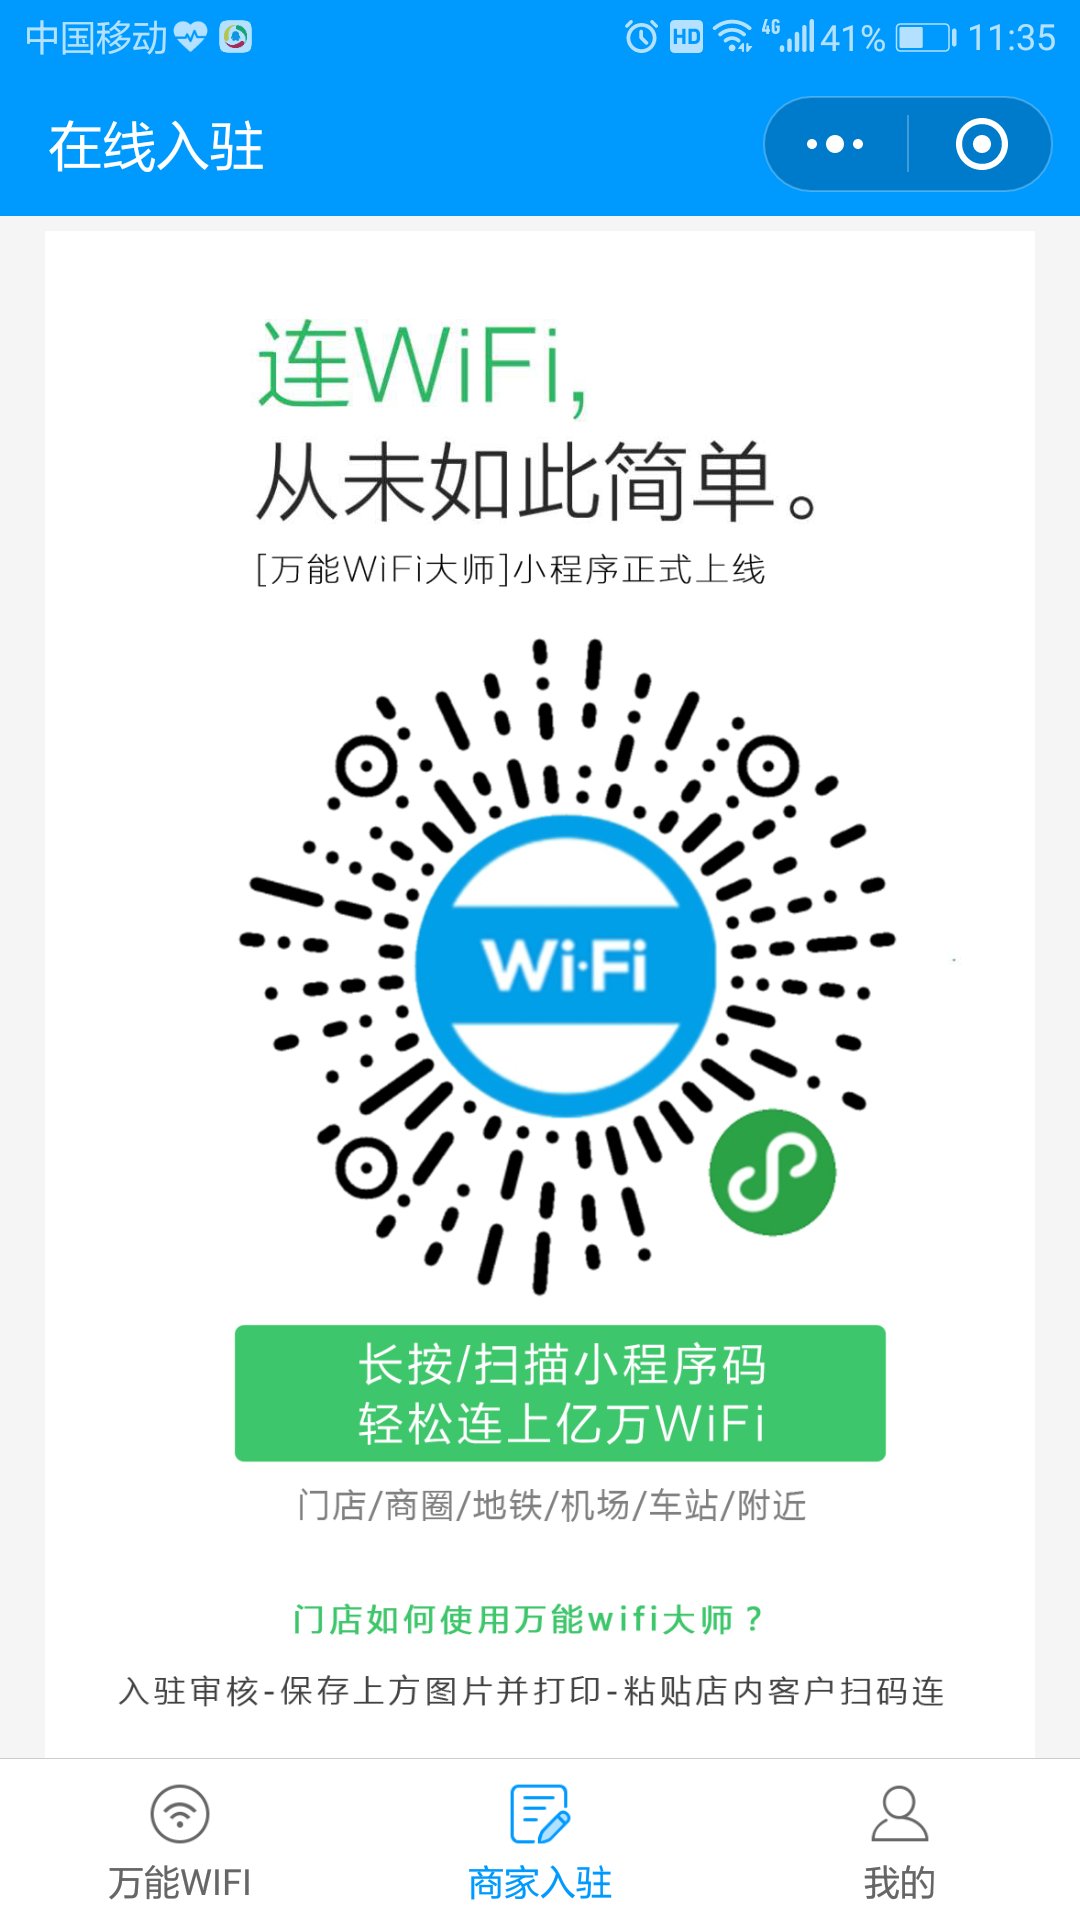 万能WiFi大师_万能WiFi大师小程序_万能WiFi大师微信小程序